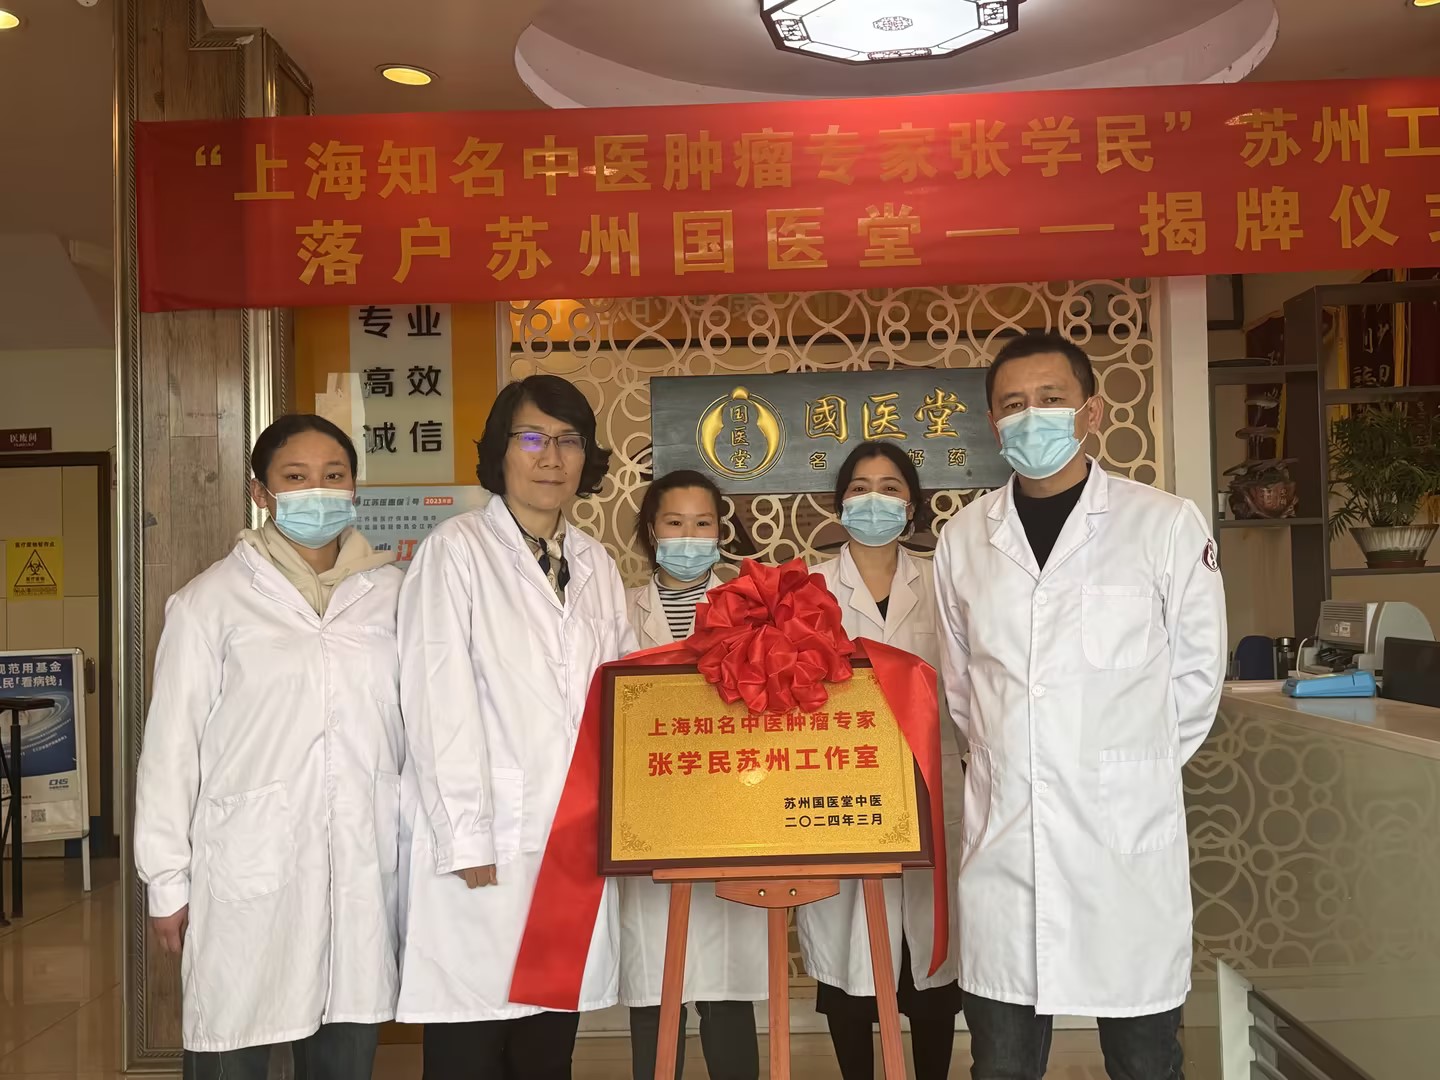 上海岳阳医院一号难求的肿瘤专家张学民苏州工作室正式落户国医堂